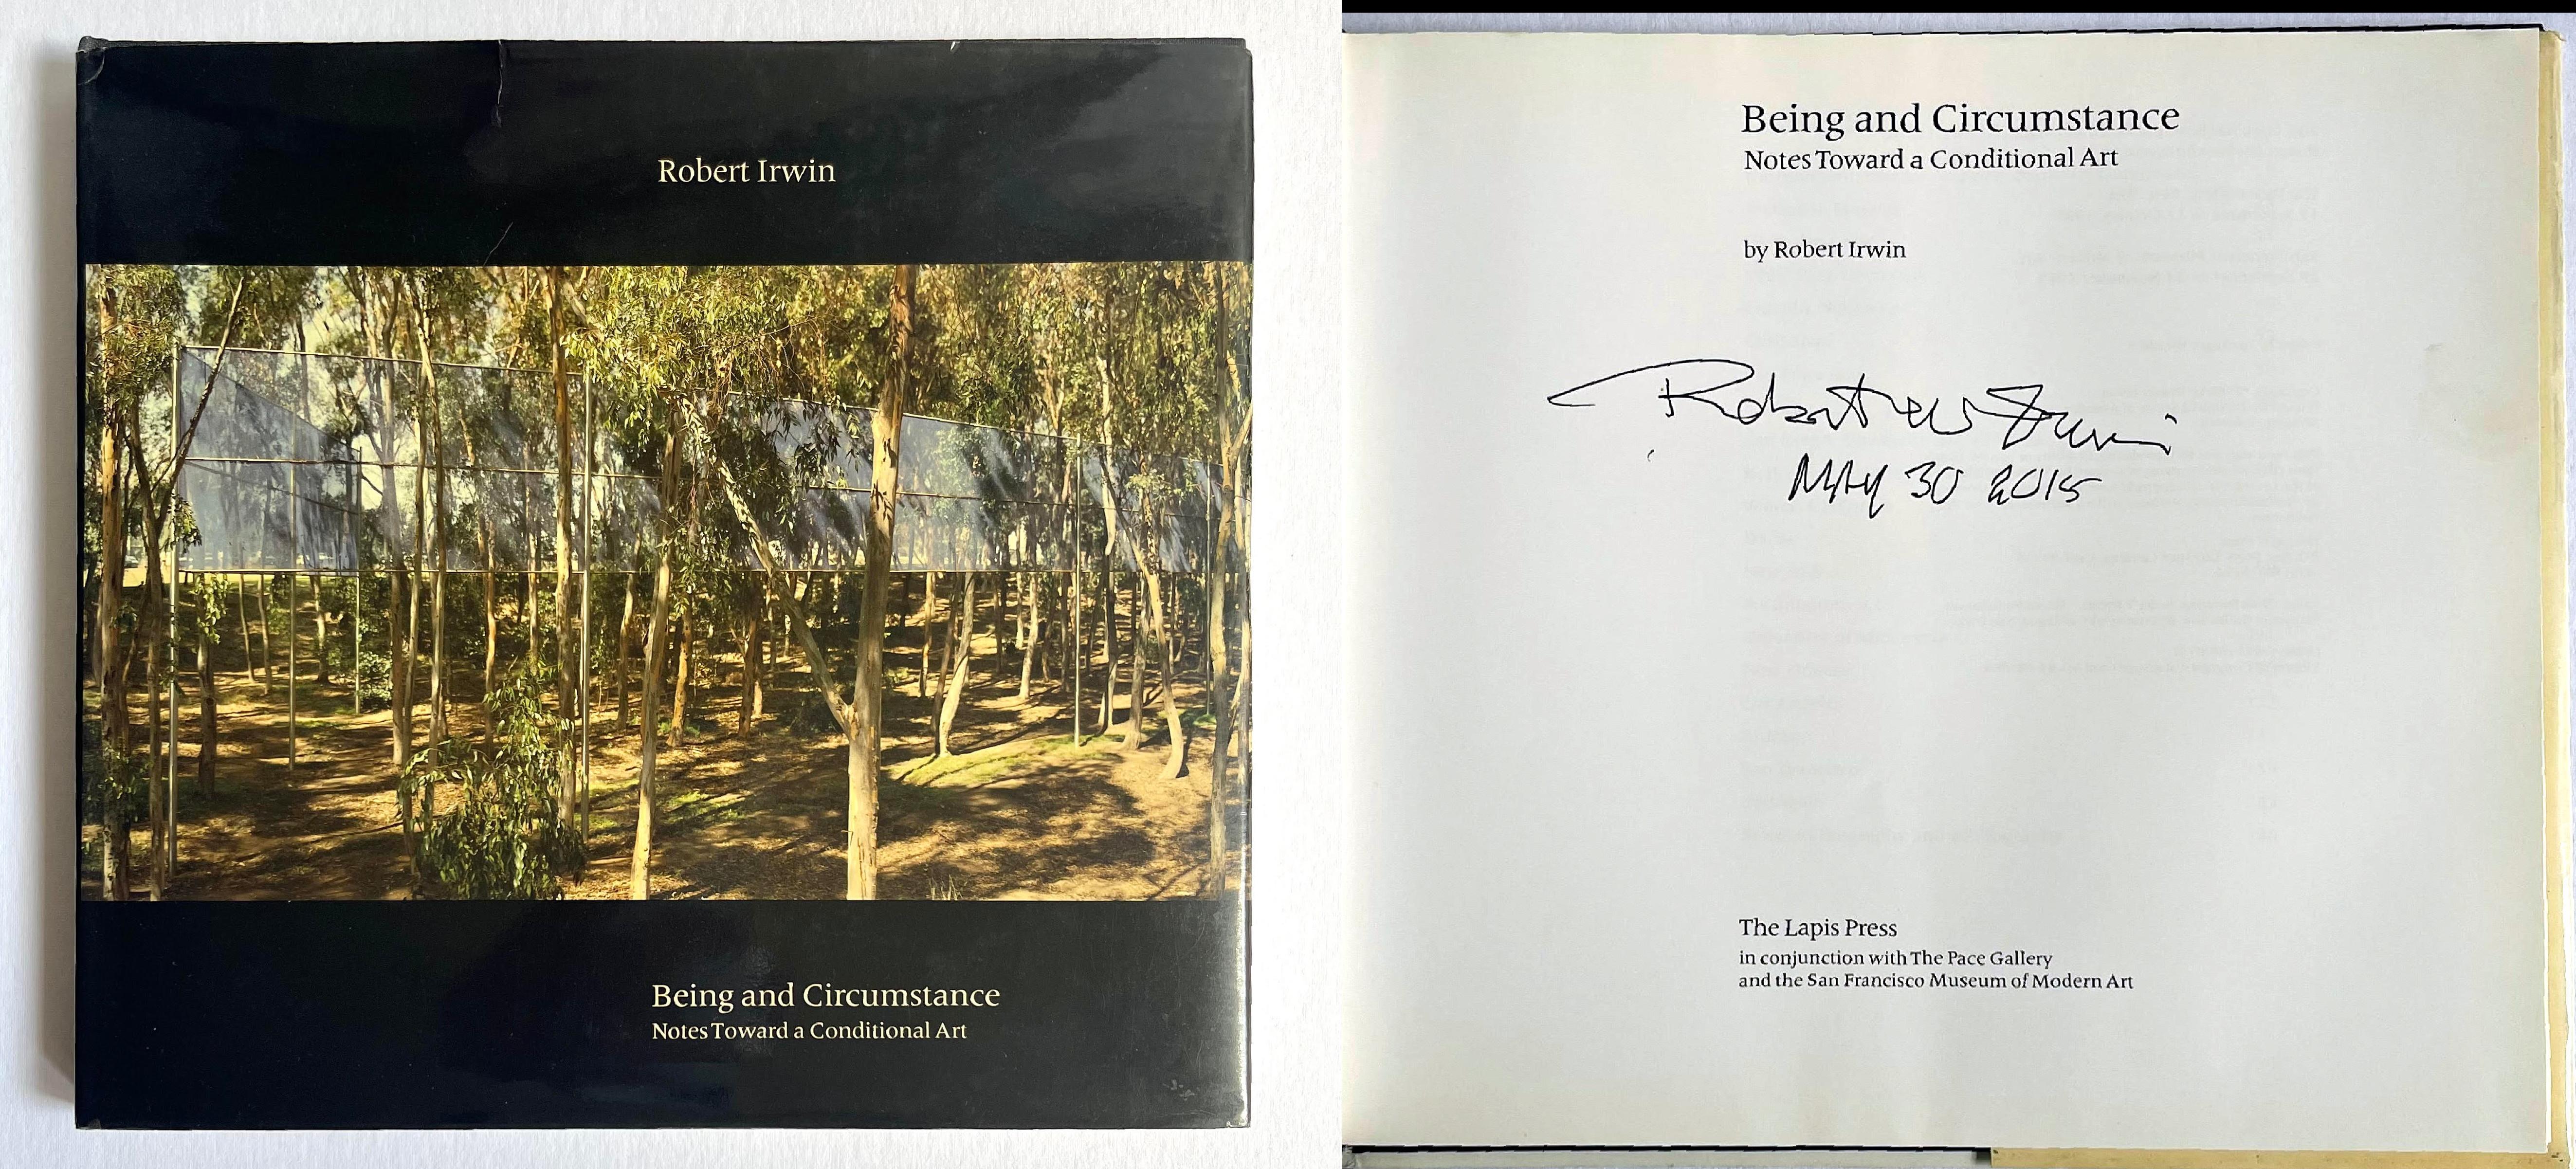 Robert IRWIN
Notes sur l'être et les circonstances pour un art conditionnel, 1985
Monographie reliée avec jaquette  (signé et daté à la main en 2015 par Robert Irwin)
Signé et daté en gras le 30 mai 2015 par Robert Irwin sur la page de titre.
9 × 9